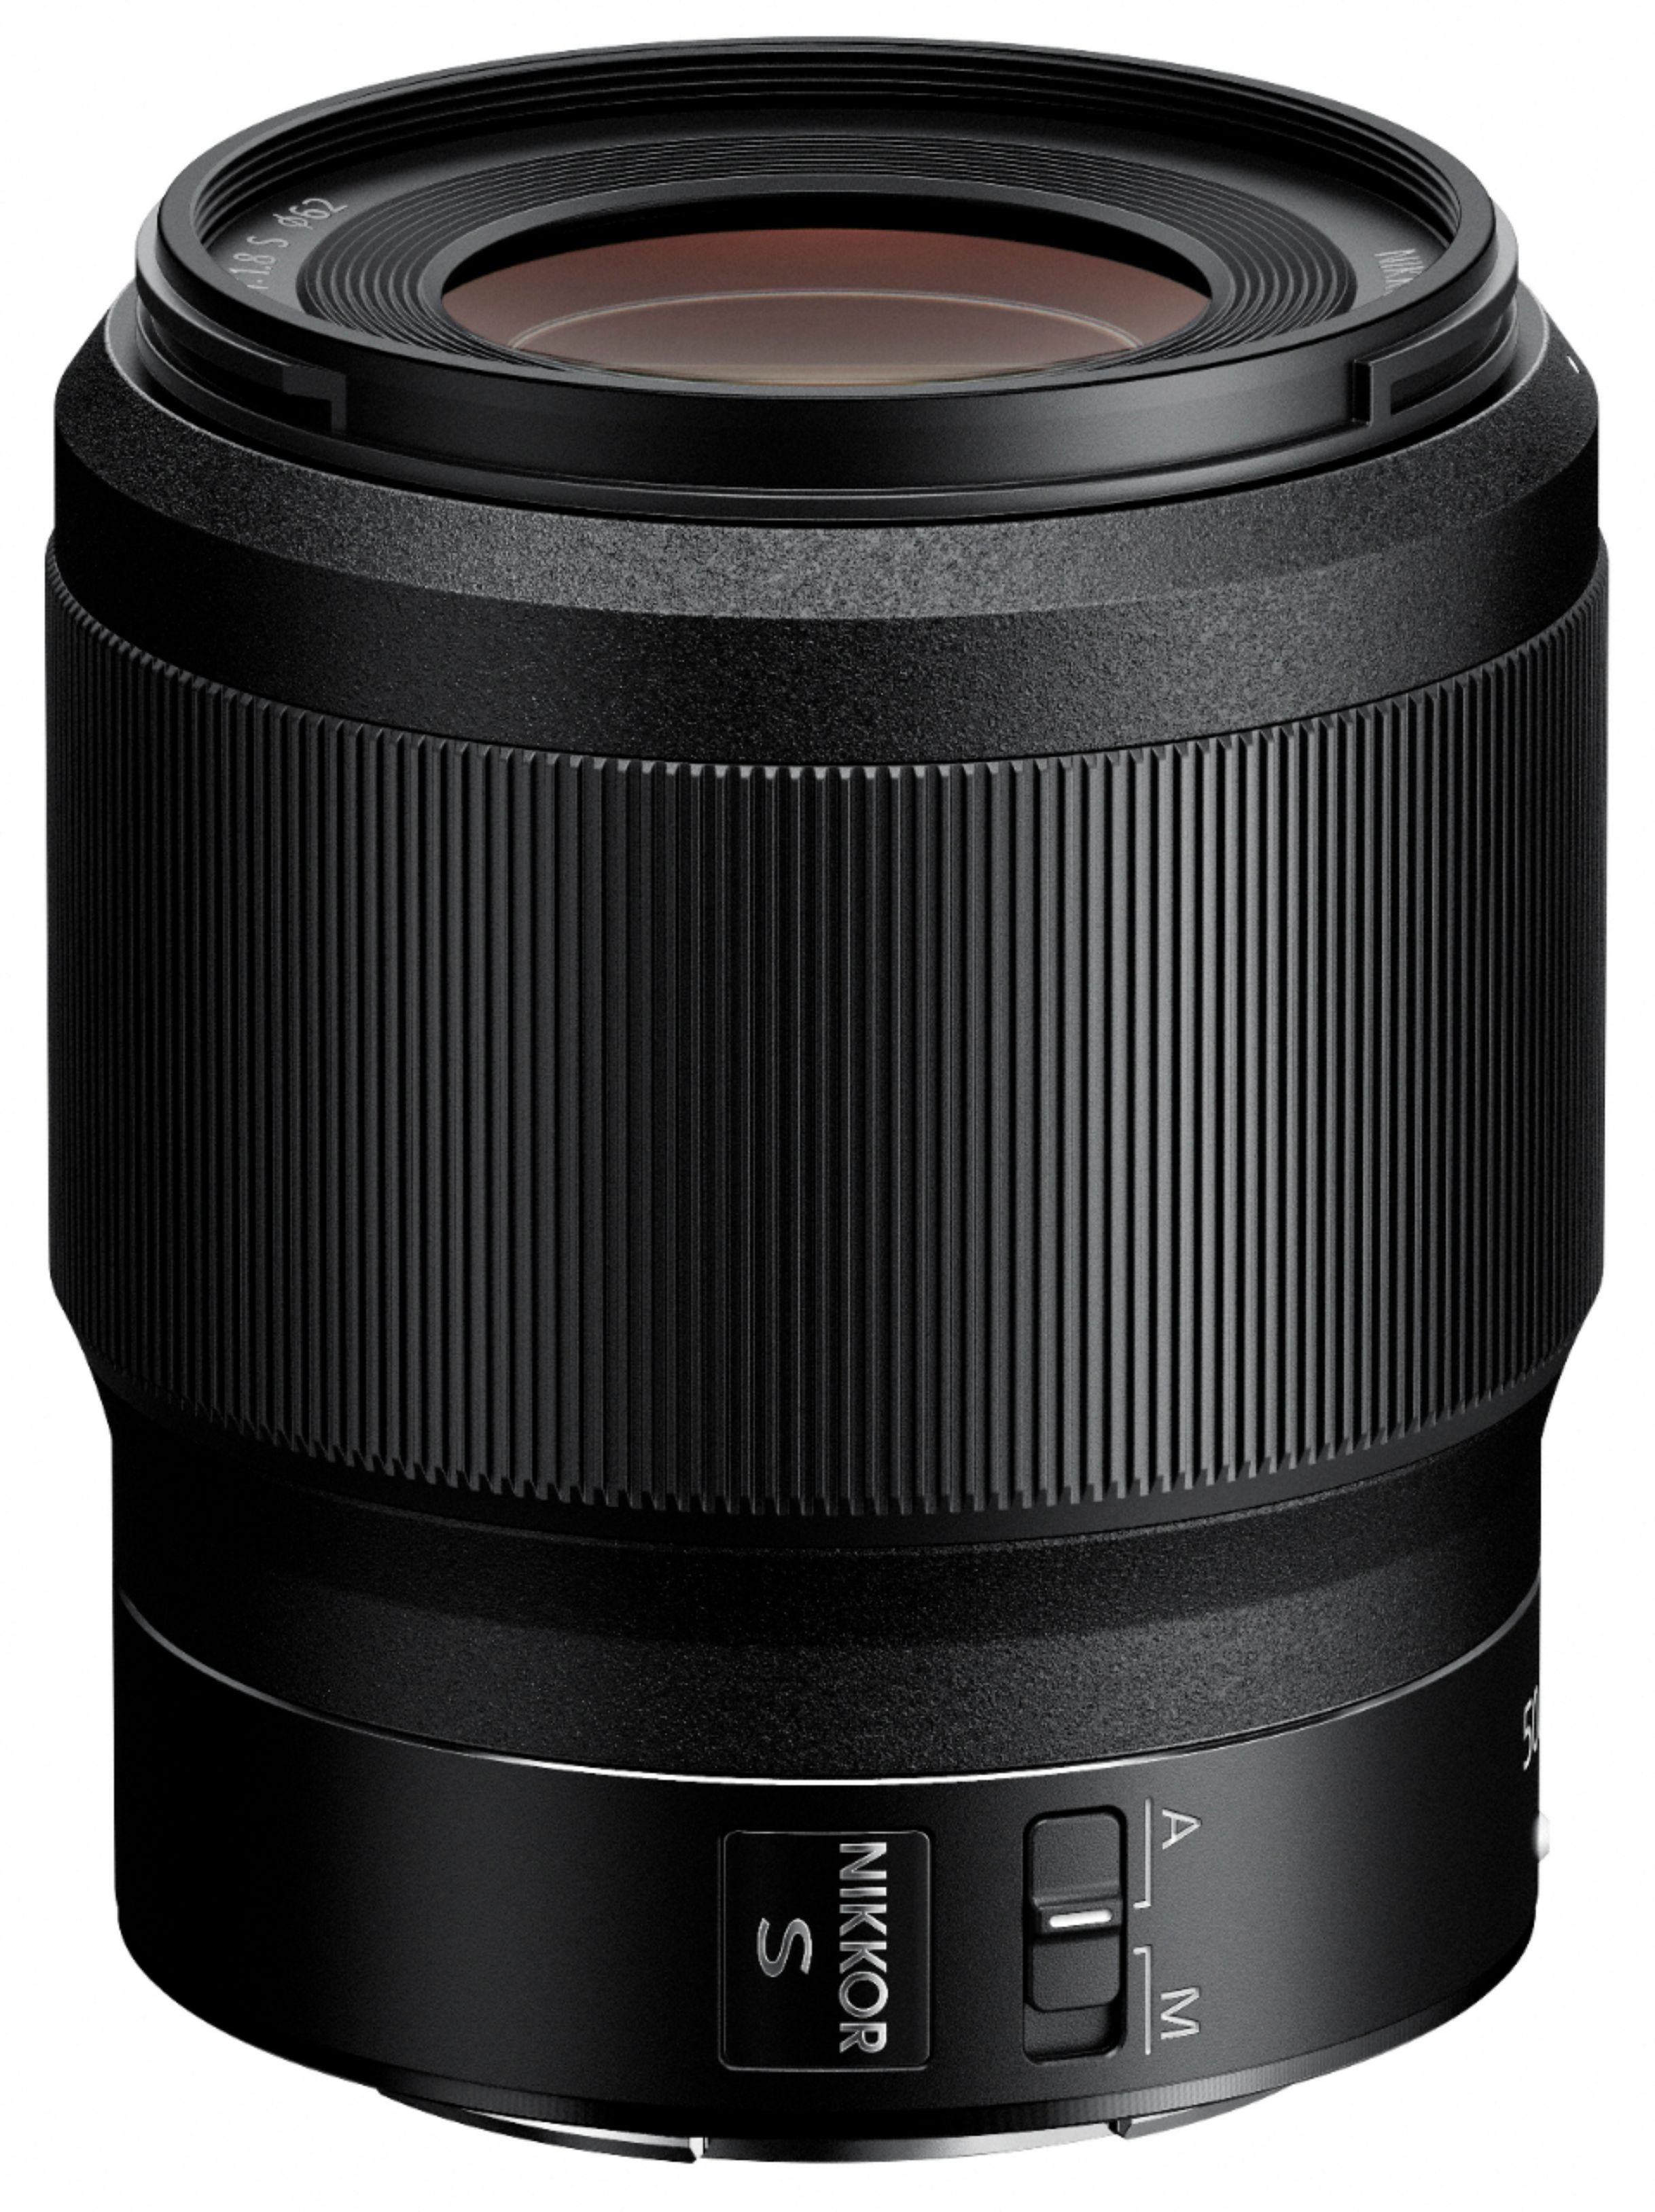 NIKKOR Z 50mm f/1.8 S Standard Prime Lens for Nikon Z Cameras 